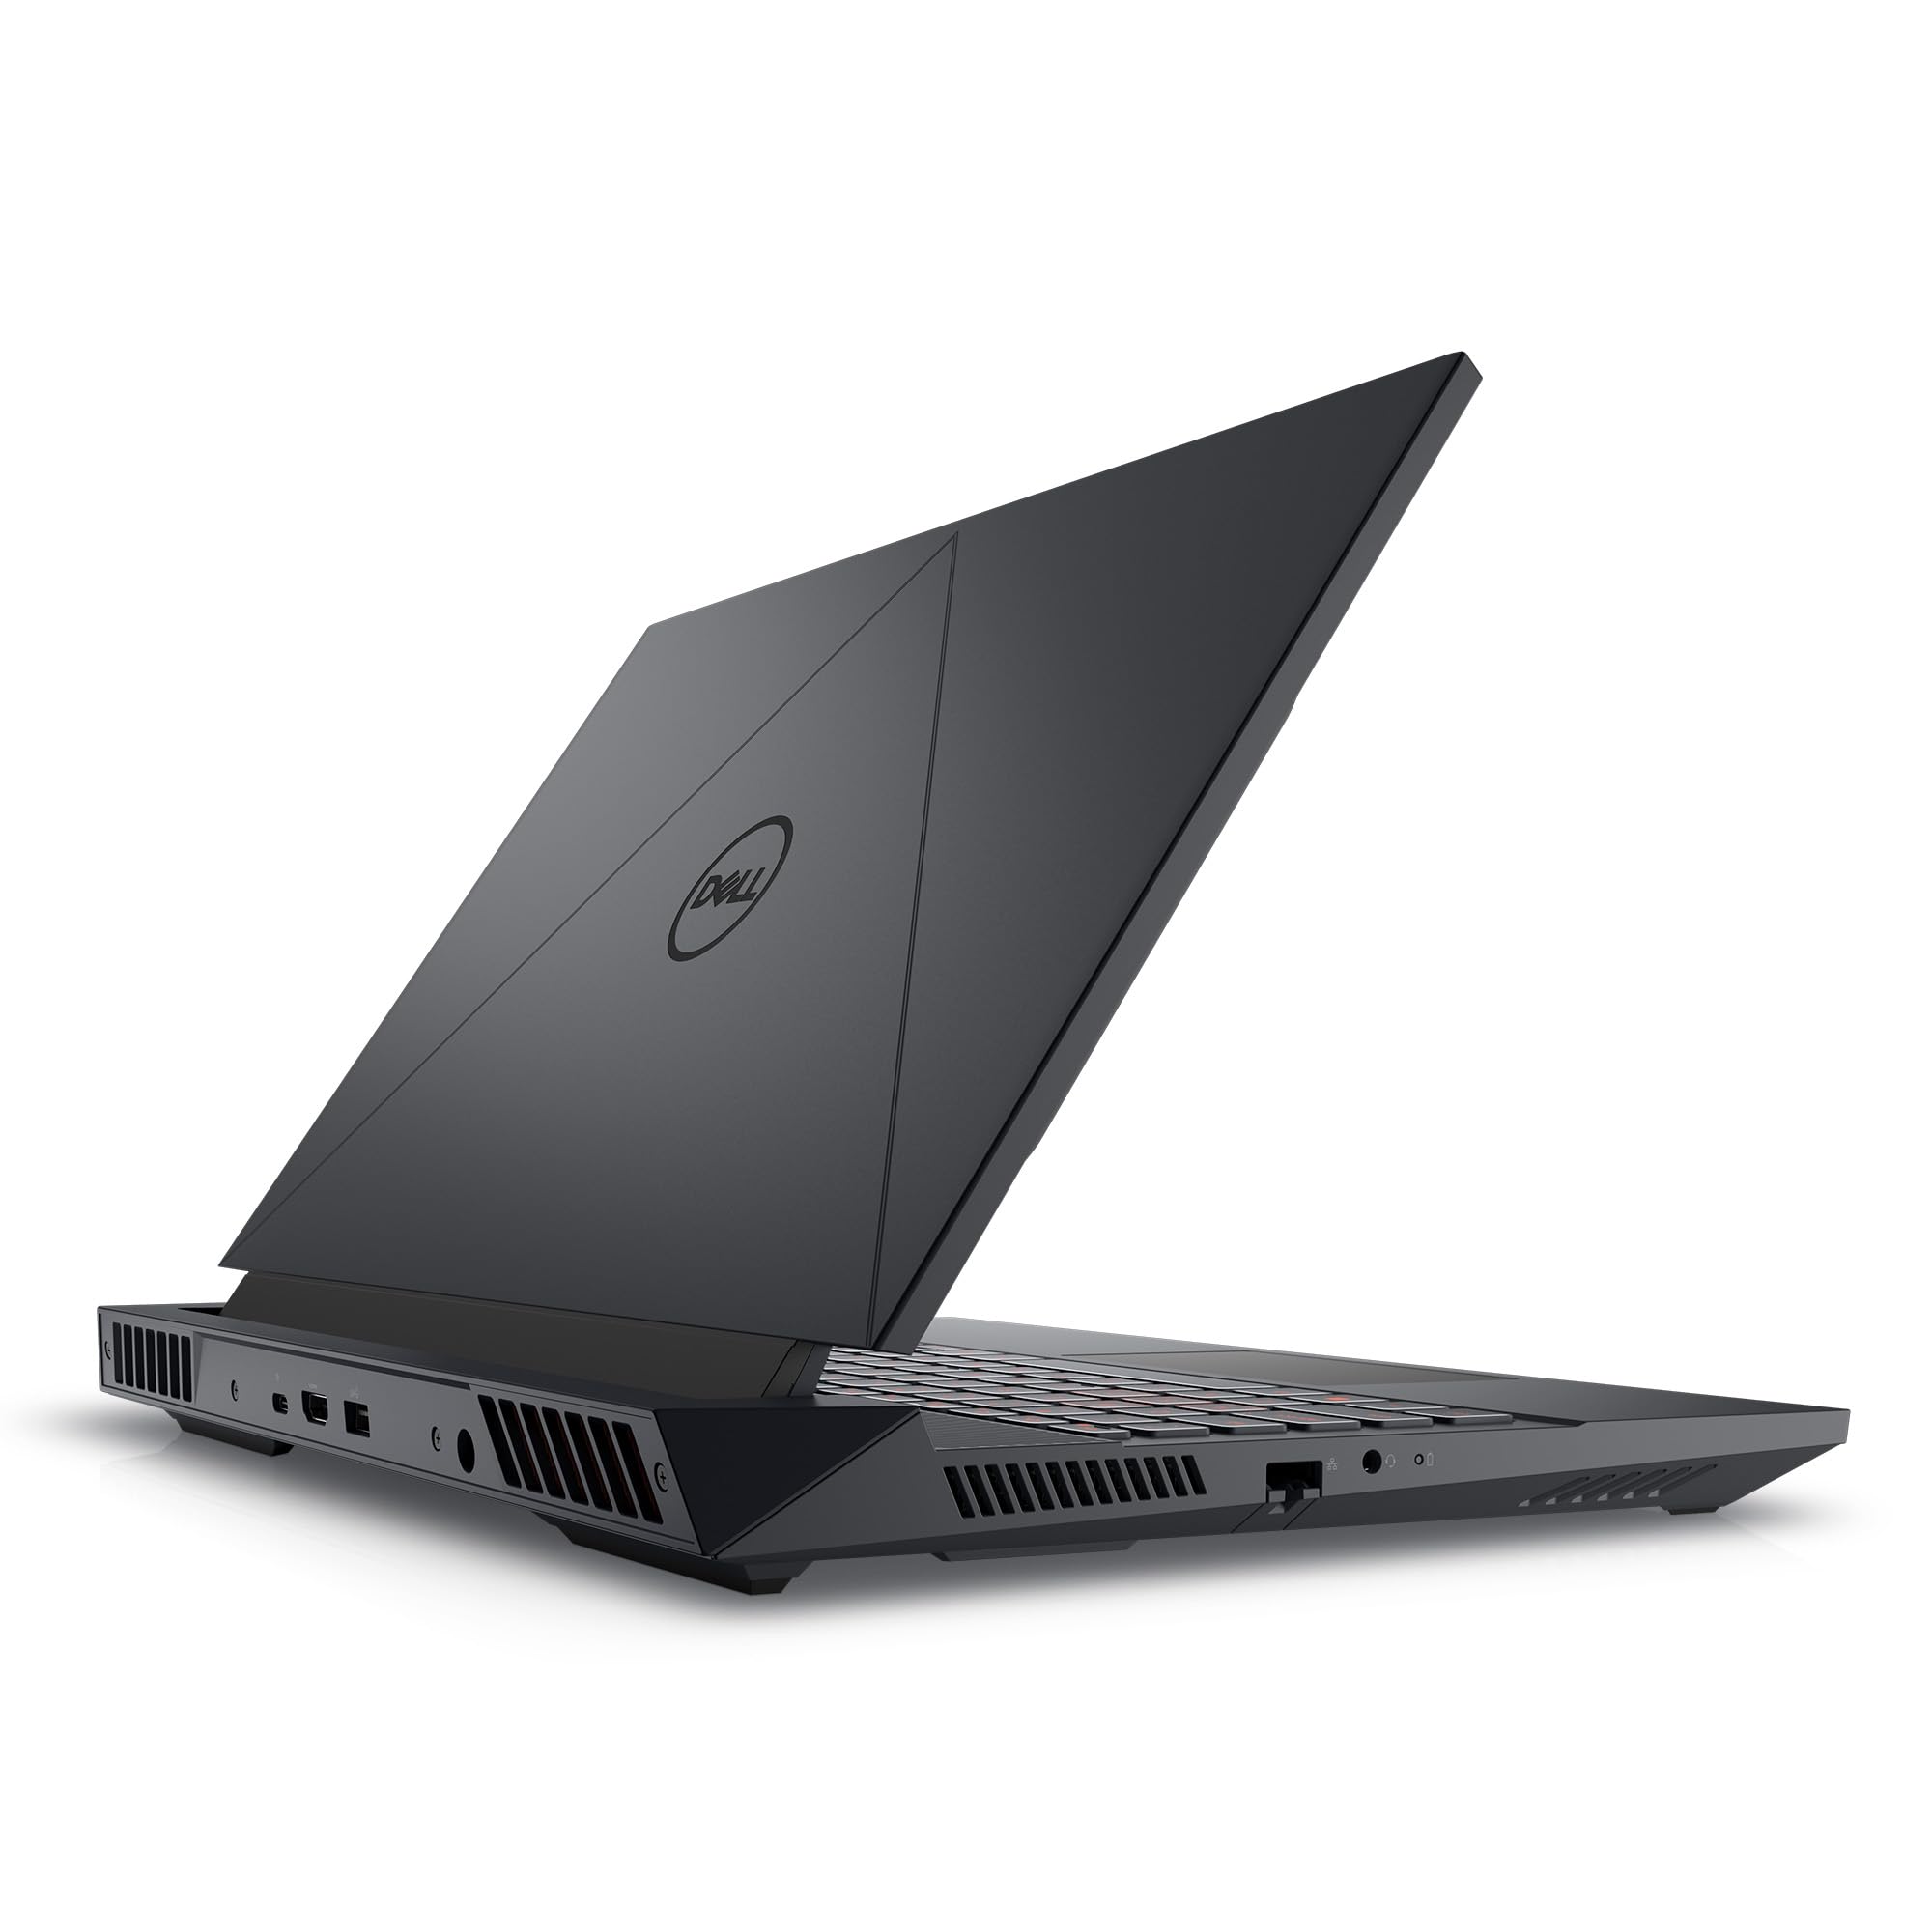 Dell G15 5535 Gaming Laptop - 15.6-inch FHD (1920x1080) 165Hz 3ms Display, AMD Ryzen 7-7840HS Processor, 16 GB DDR5 RAM, 512 GB SSD, NVIDIA GeForce RTX 4060, Windows 11 Home - Dark Shadow Gray